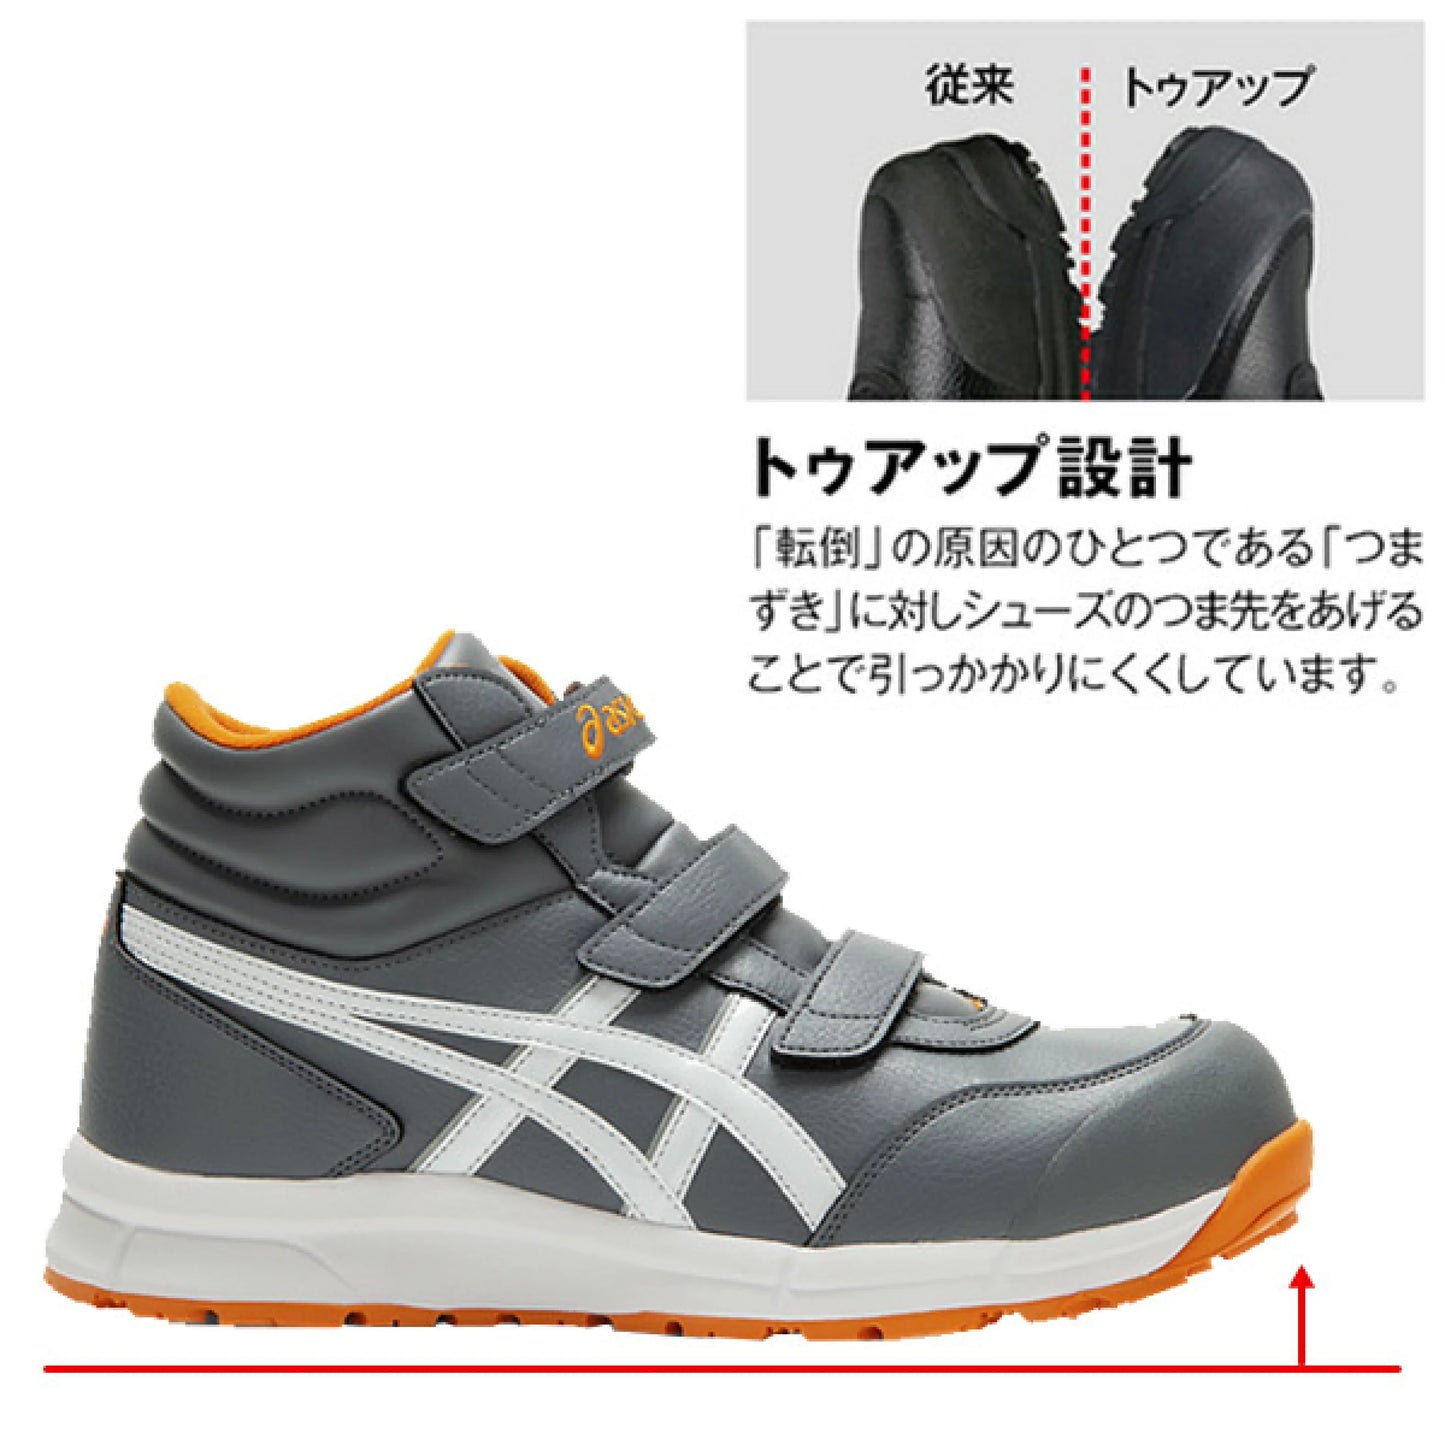 🎌日本 【訂貨】ASICS 灰色防滑安全鞋中筒  CP302